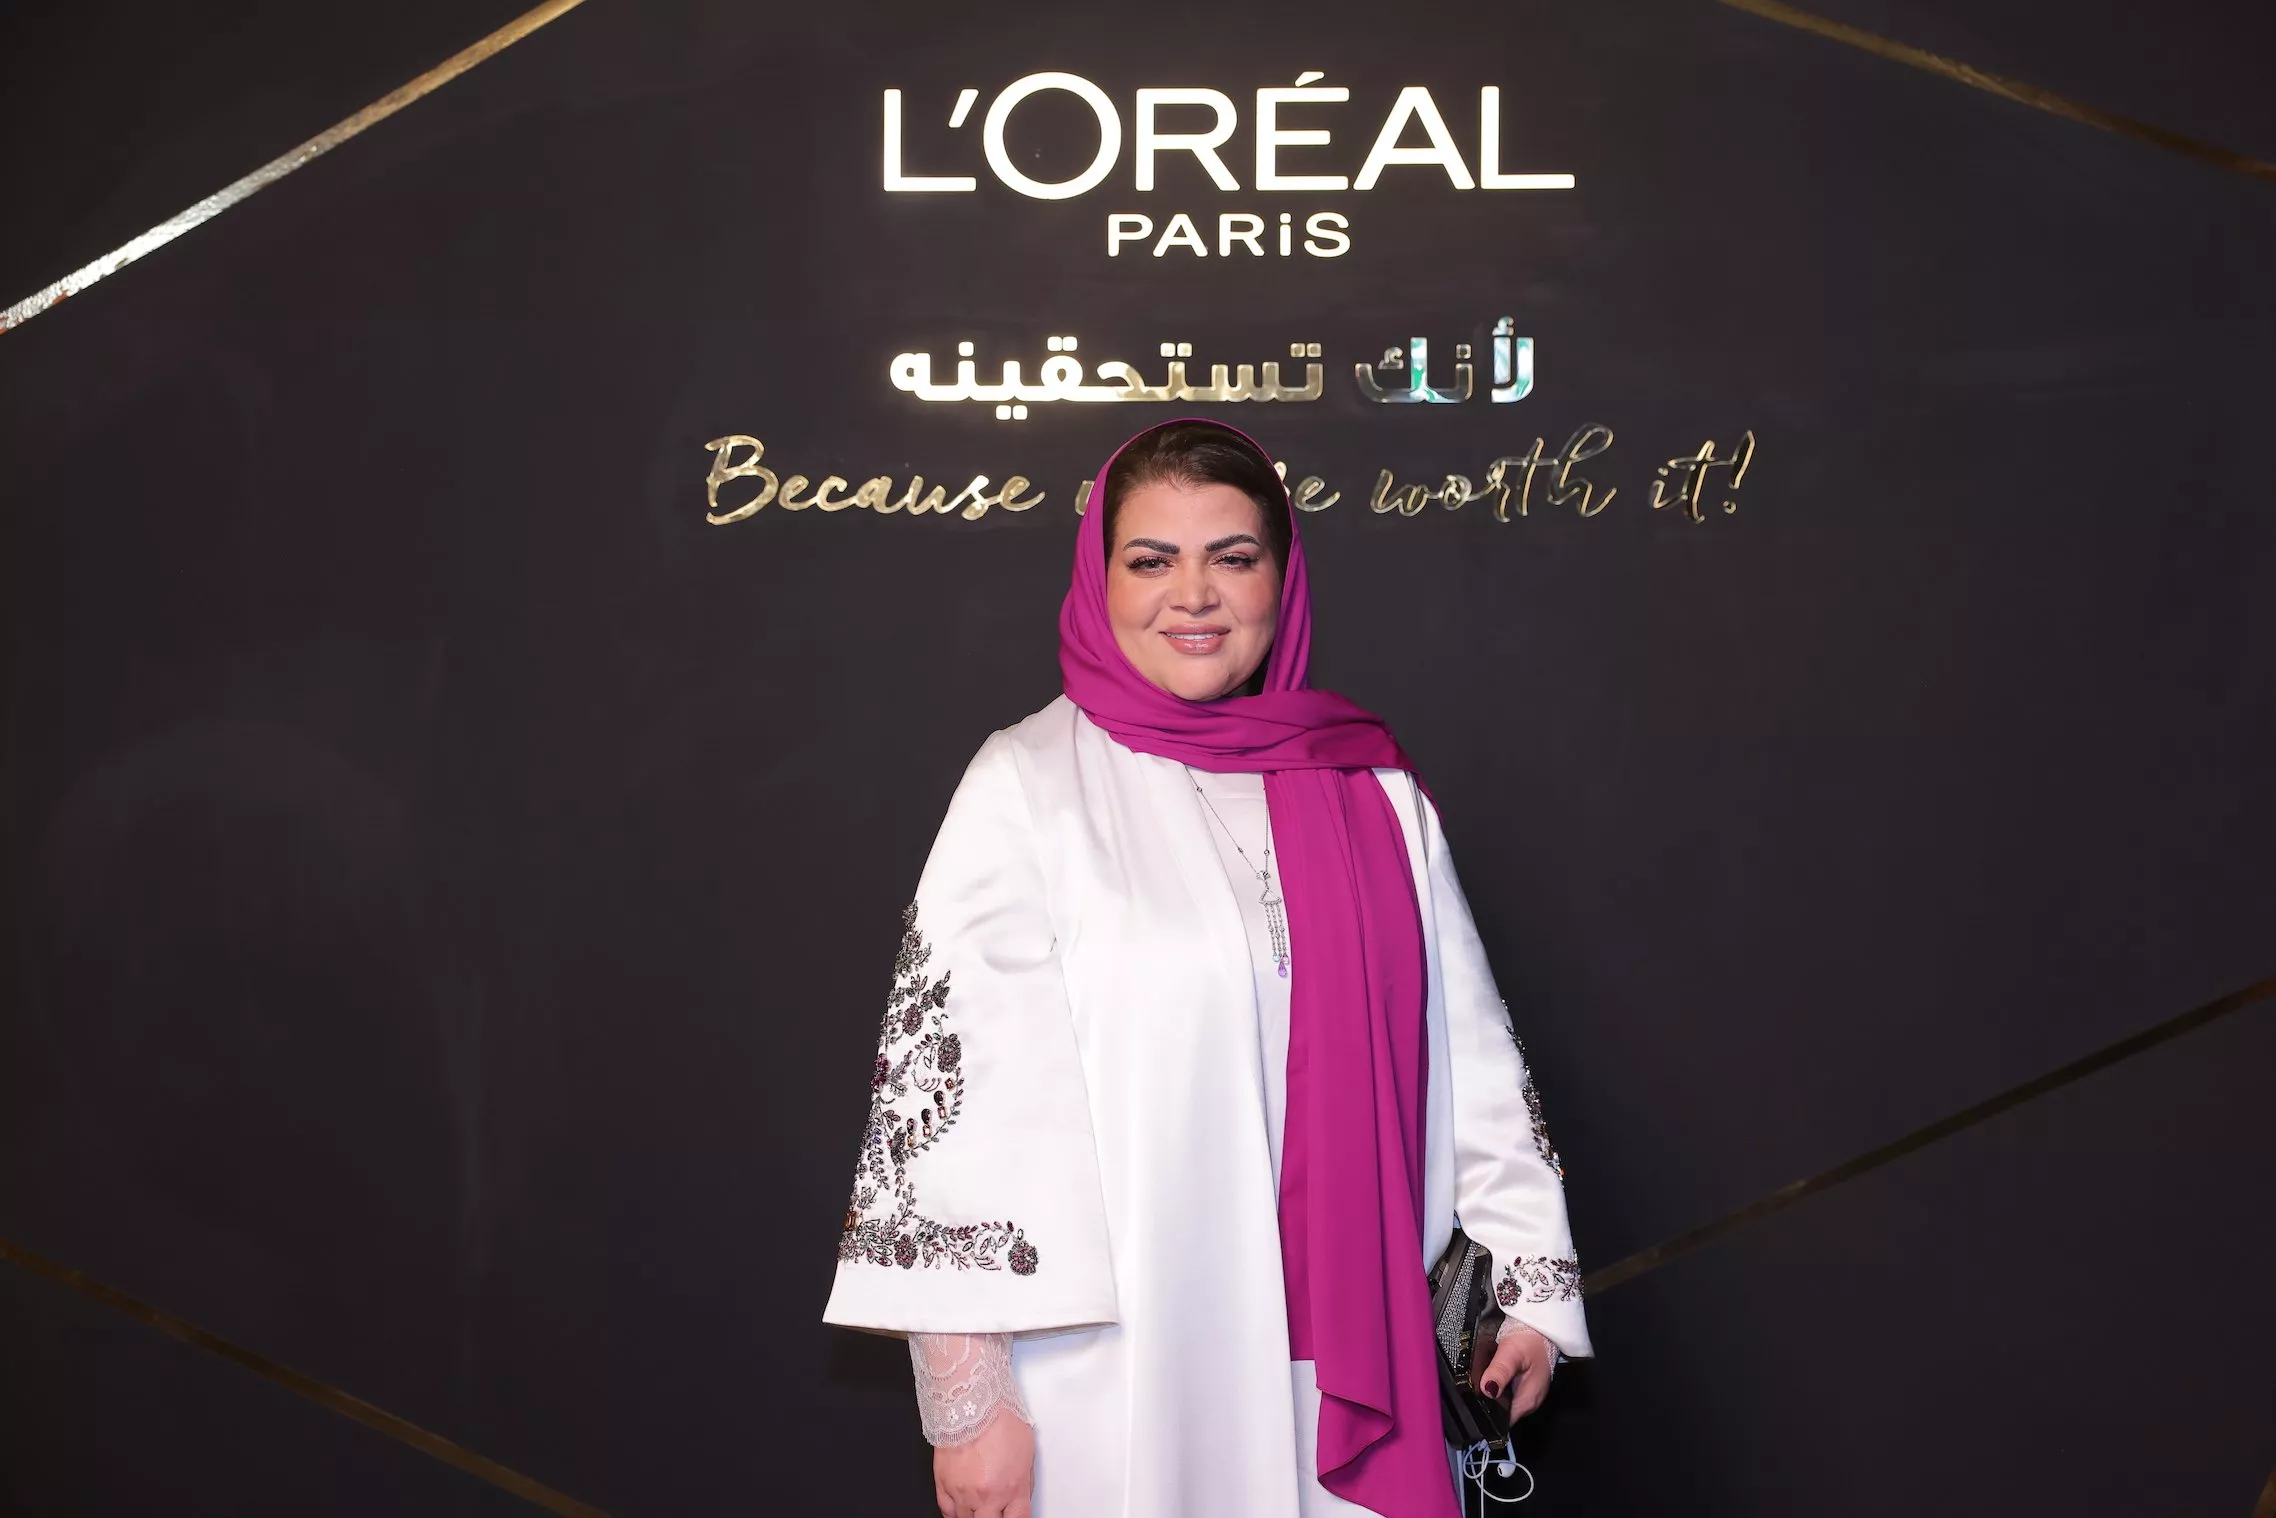 لوريال باريس تطلق مسابقة Women of Worth في العالم العربي